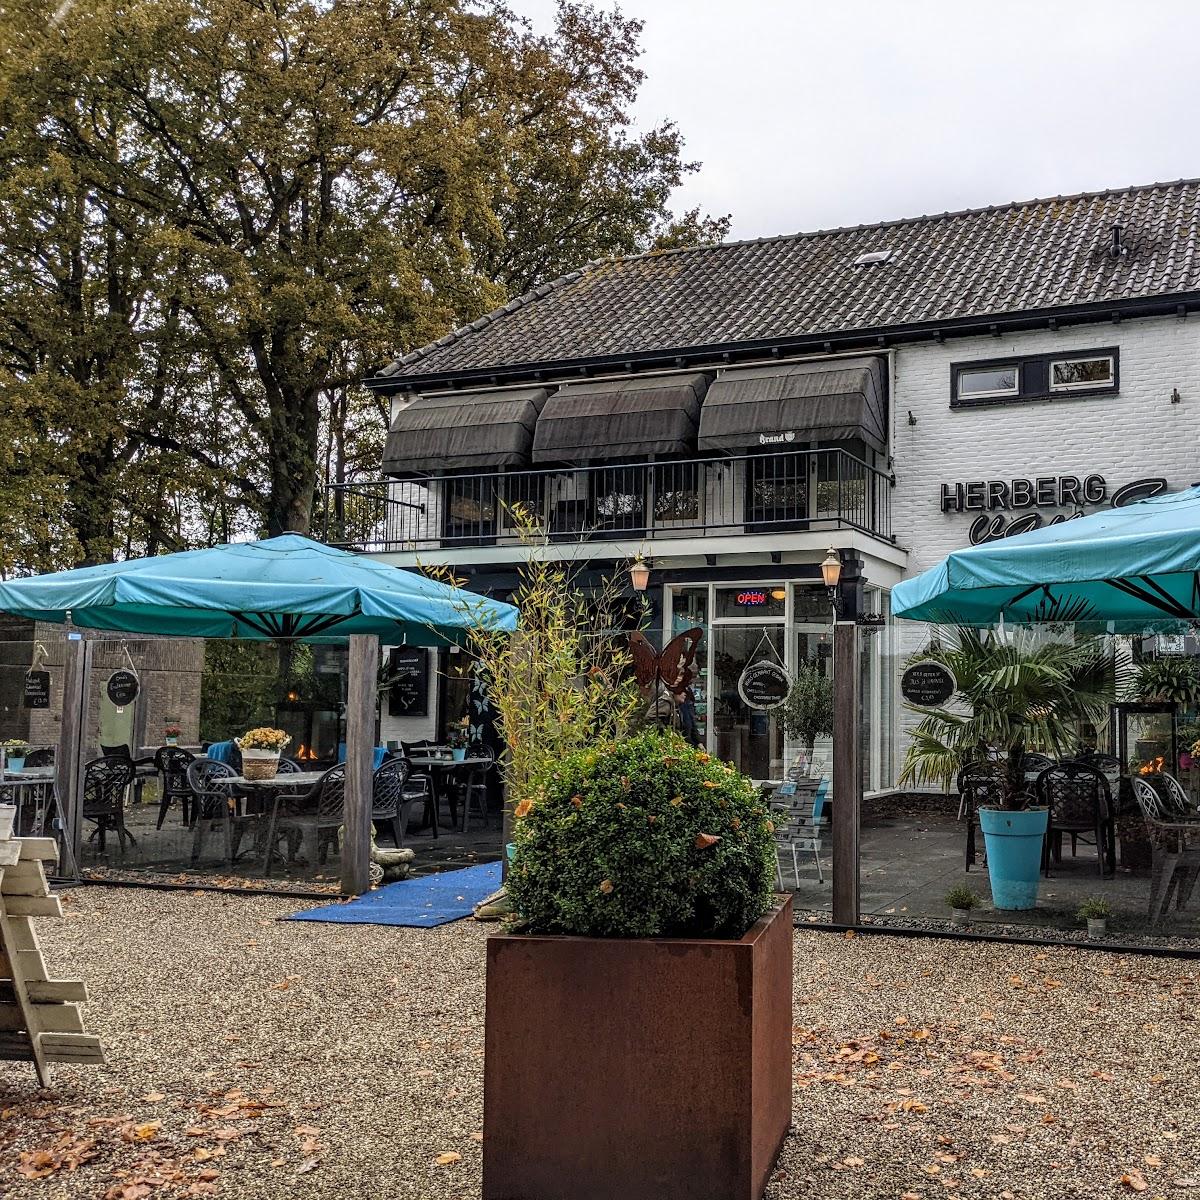 Restaurant "Herberg van Es" in Roderesch